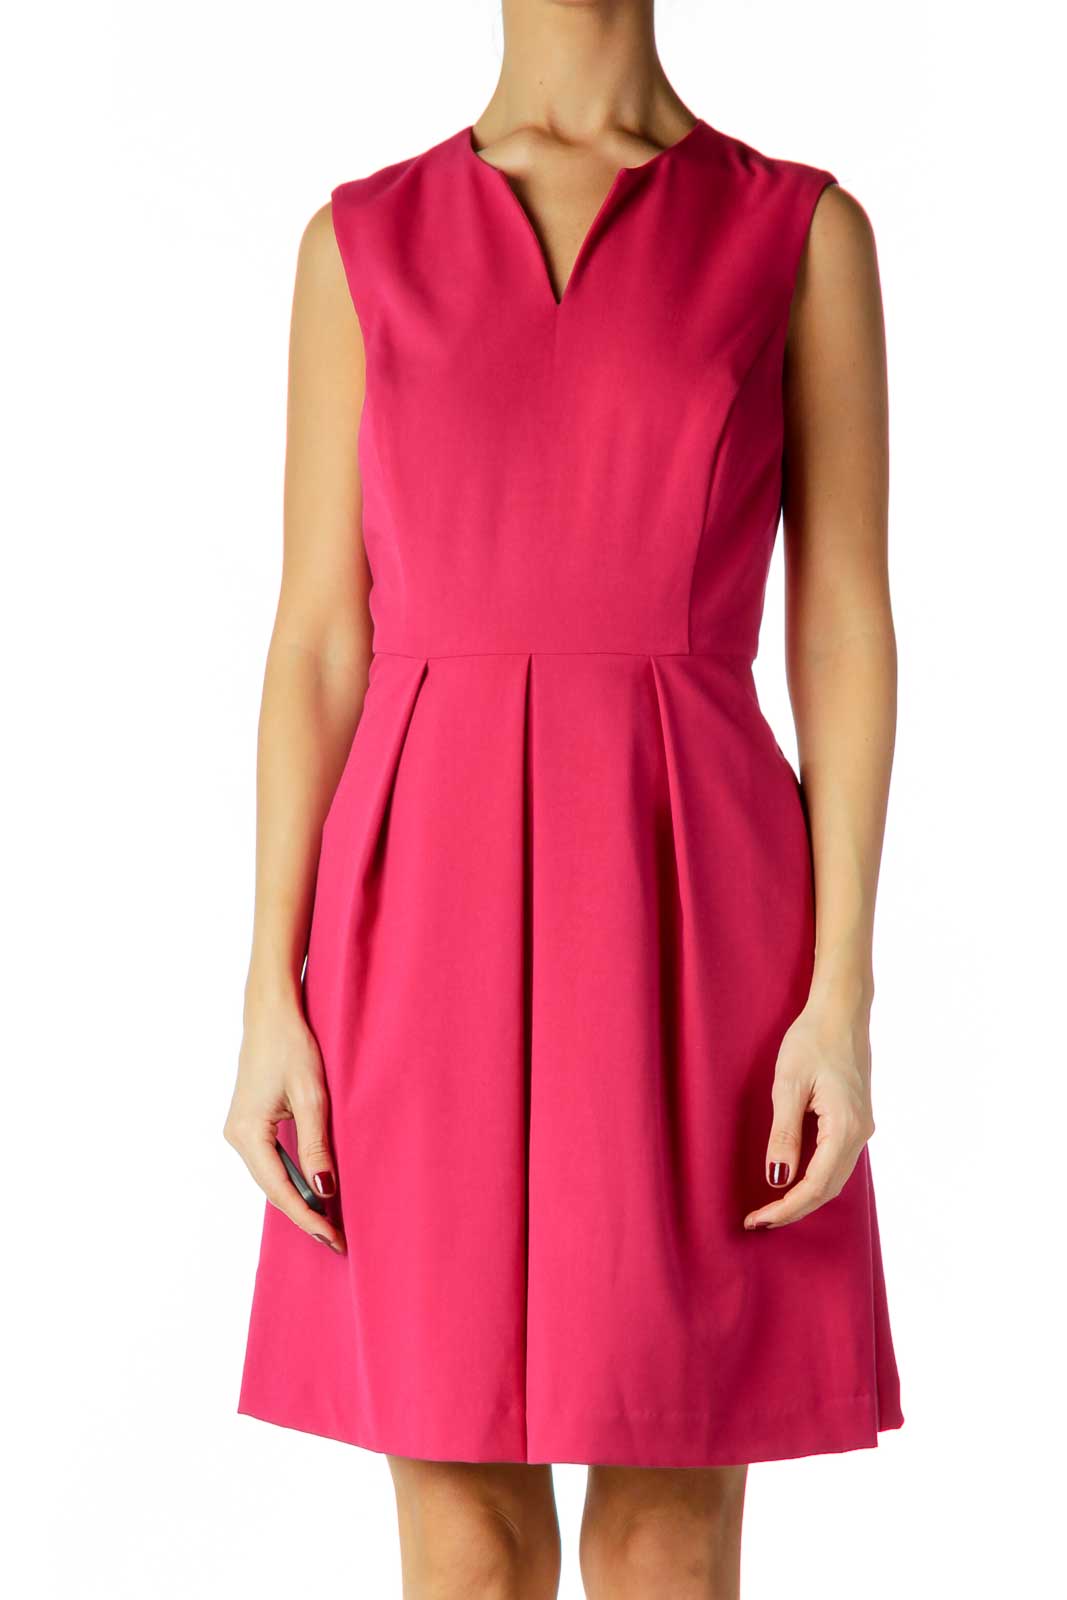 Pink V-Neck Cocktail Dress Front